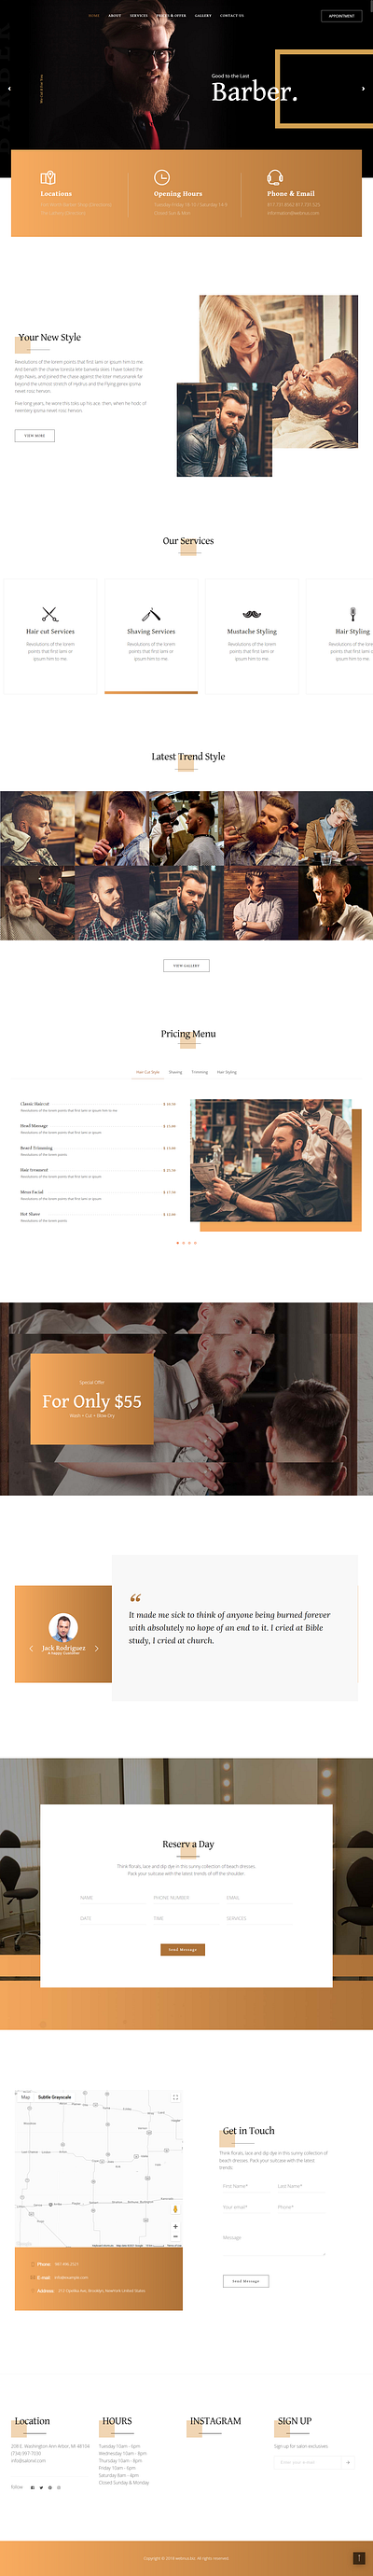 Get A Super Clean & Sharp Barber Shop Website. barber shop branding design graphic design service website ui ux website design